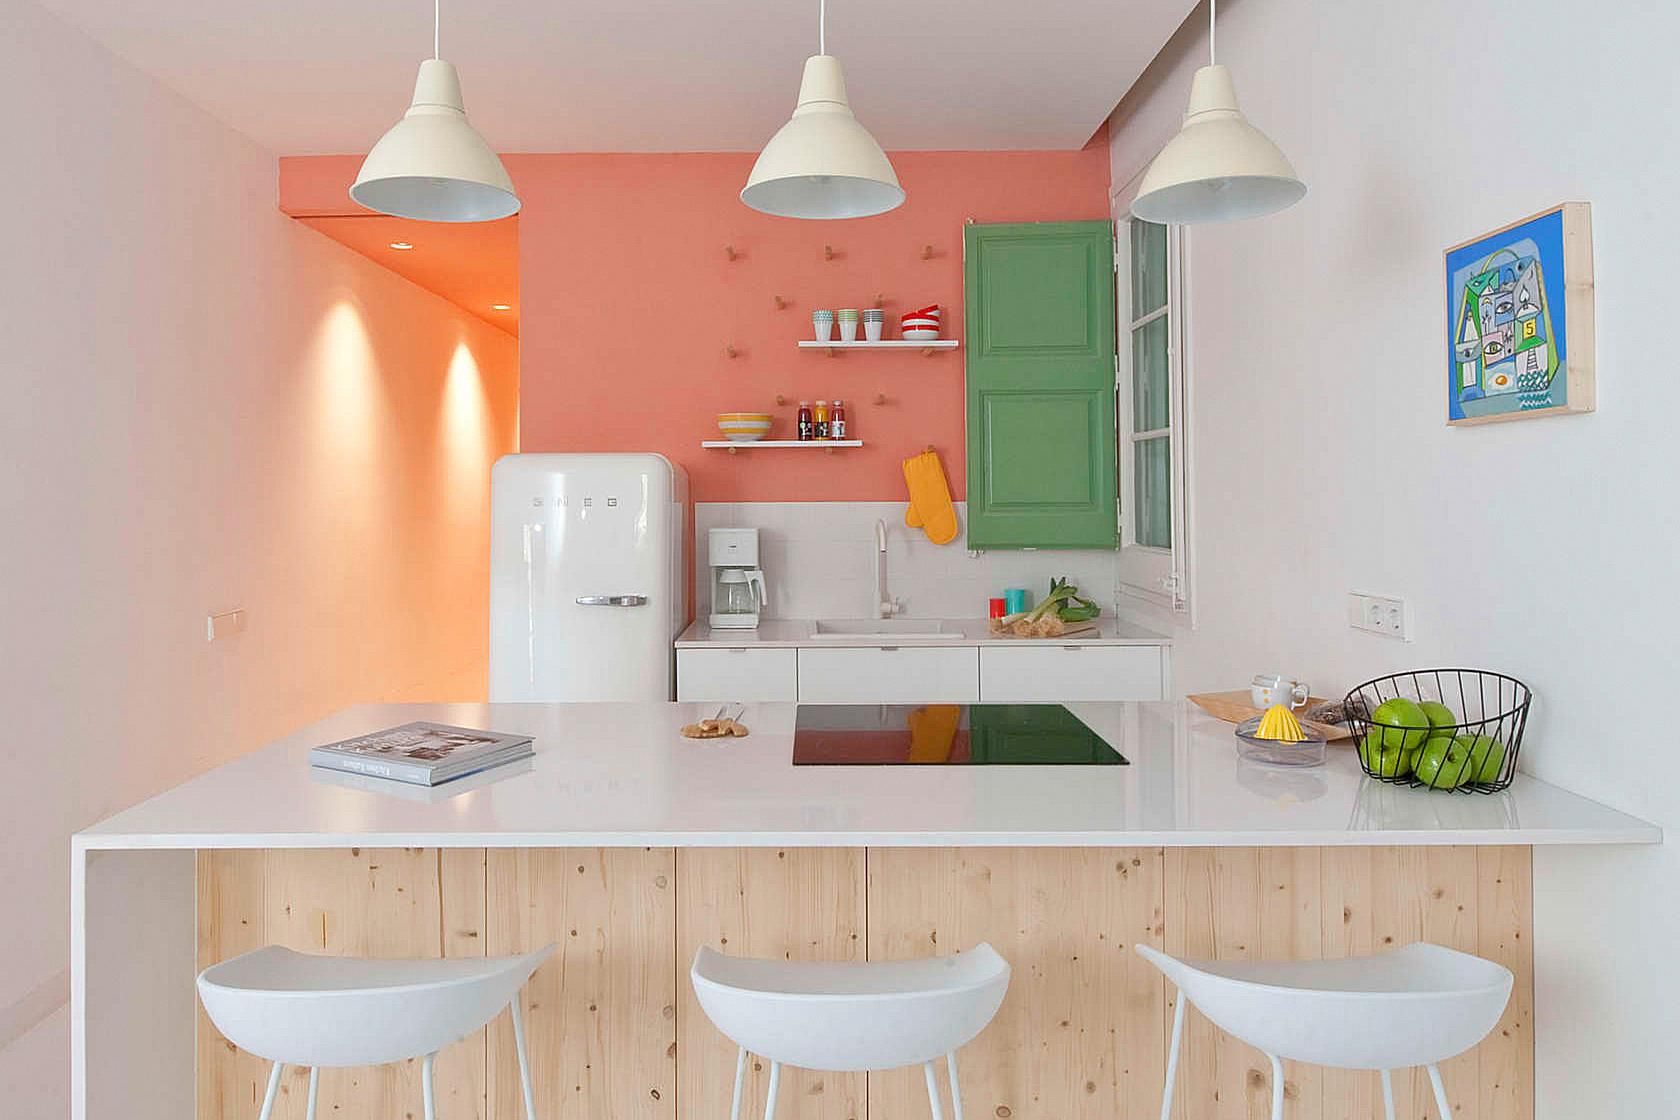 10 Unique Small Kitchen Design Ideas